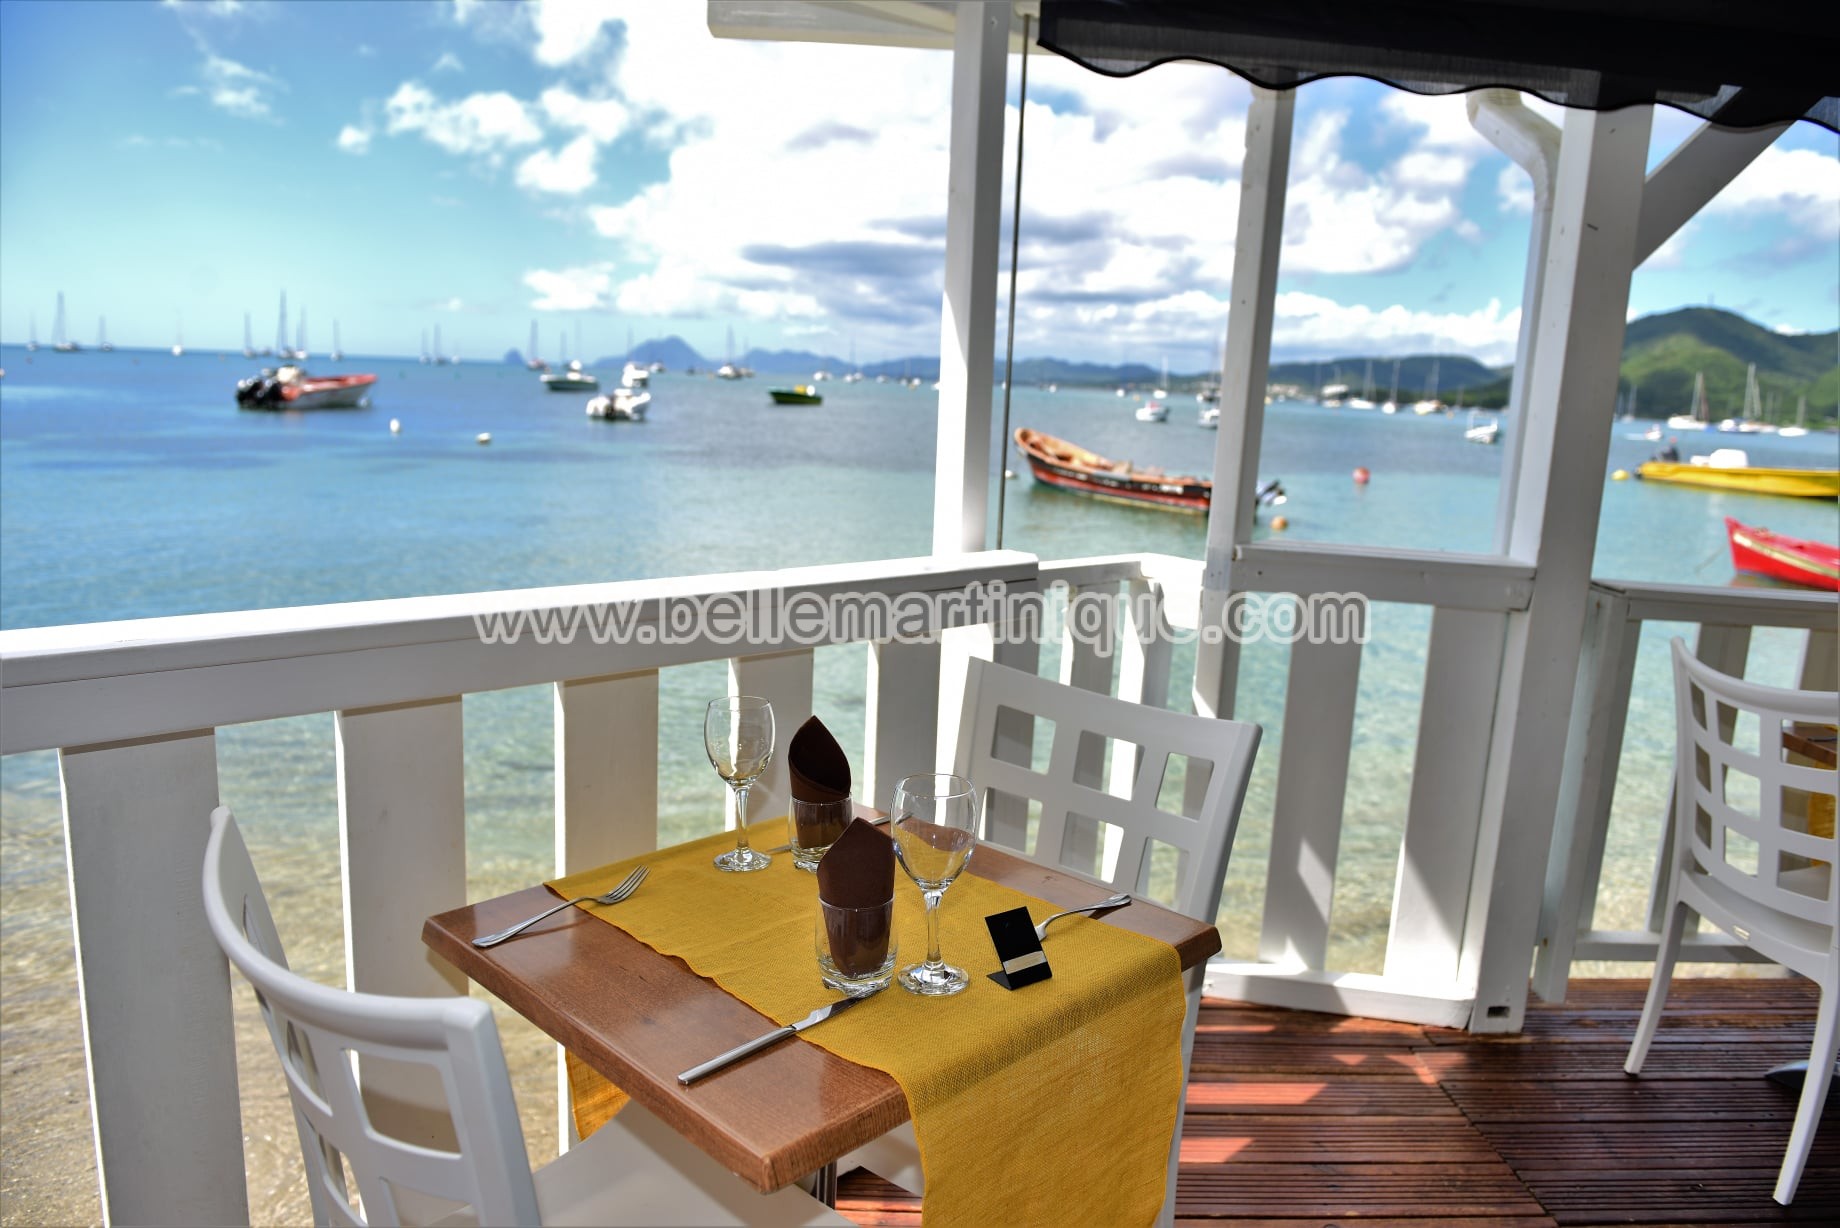 Paille Coco - Restaurant - Sainte Anne - Martinique - Antilles - Caraibes 16